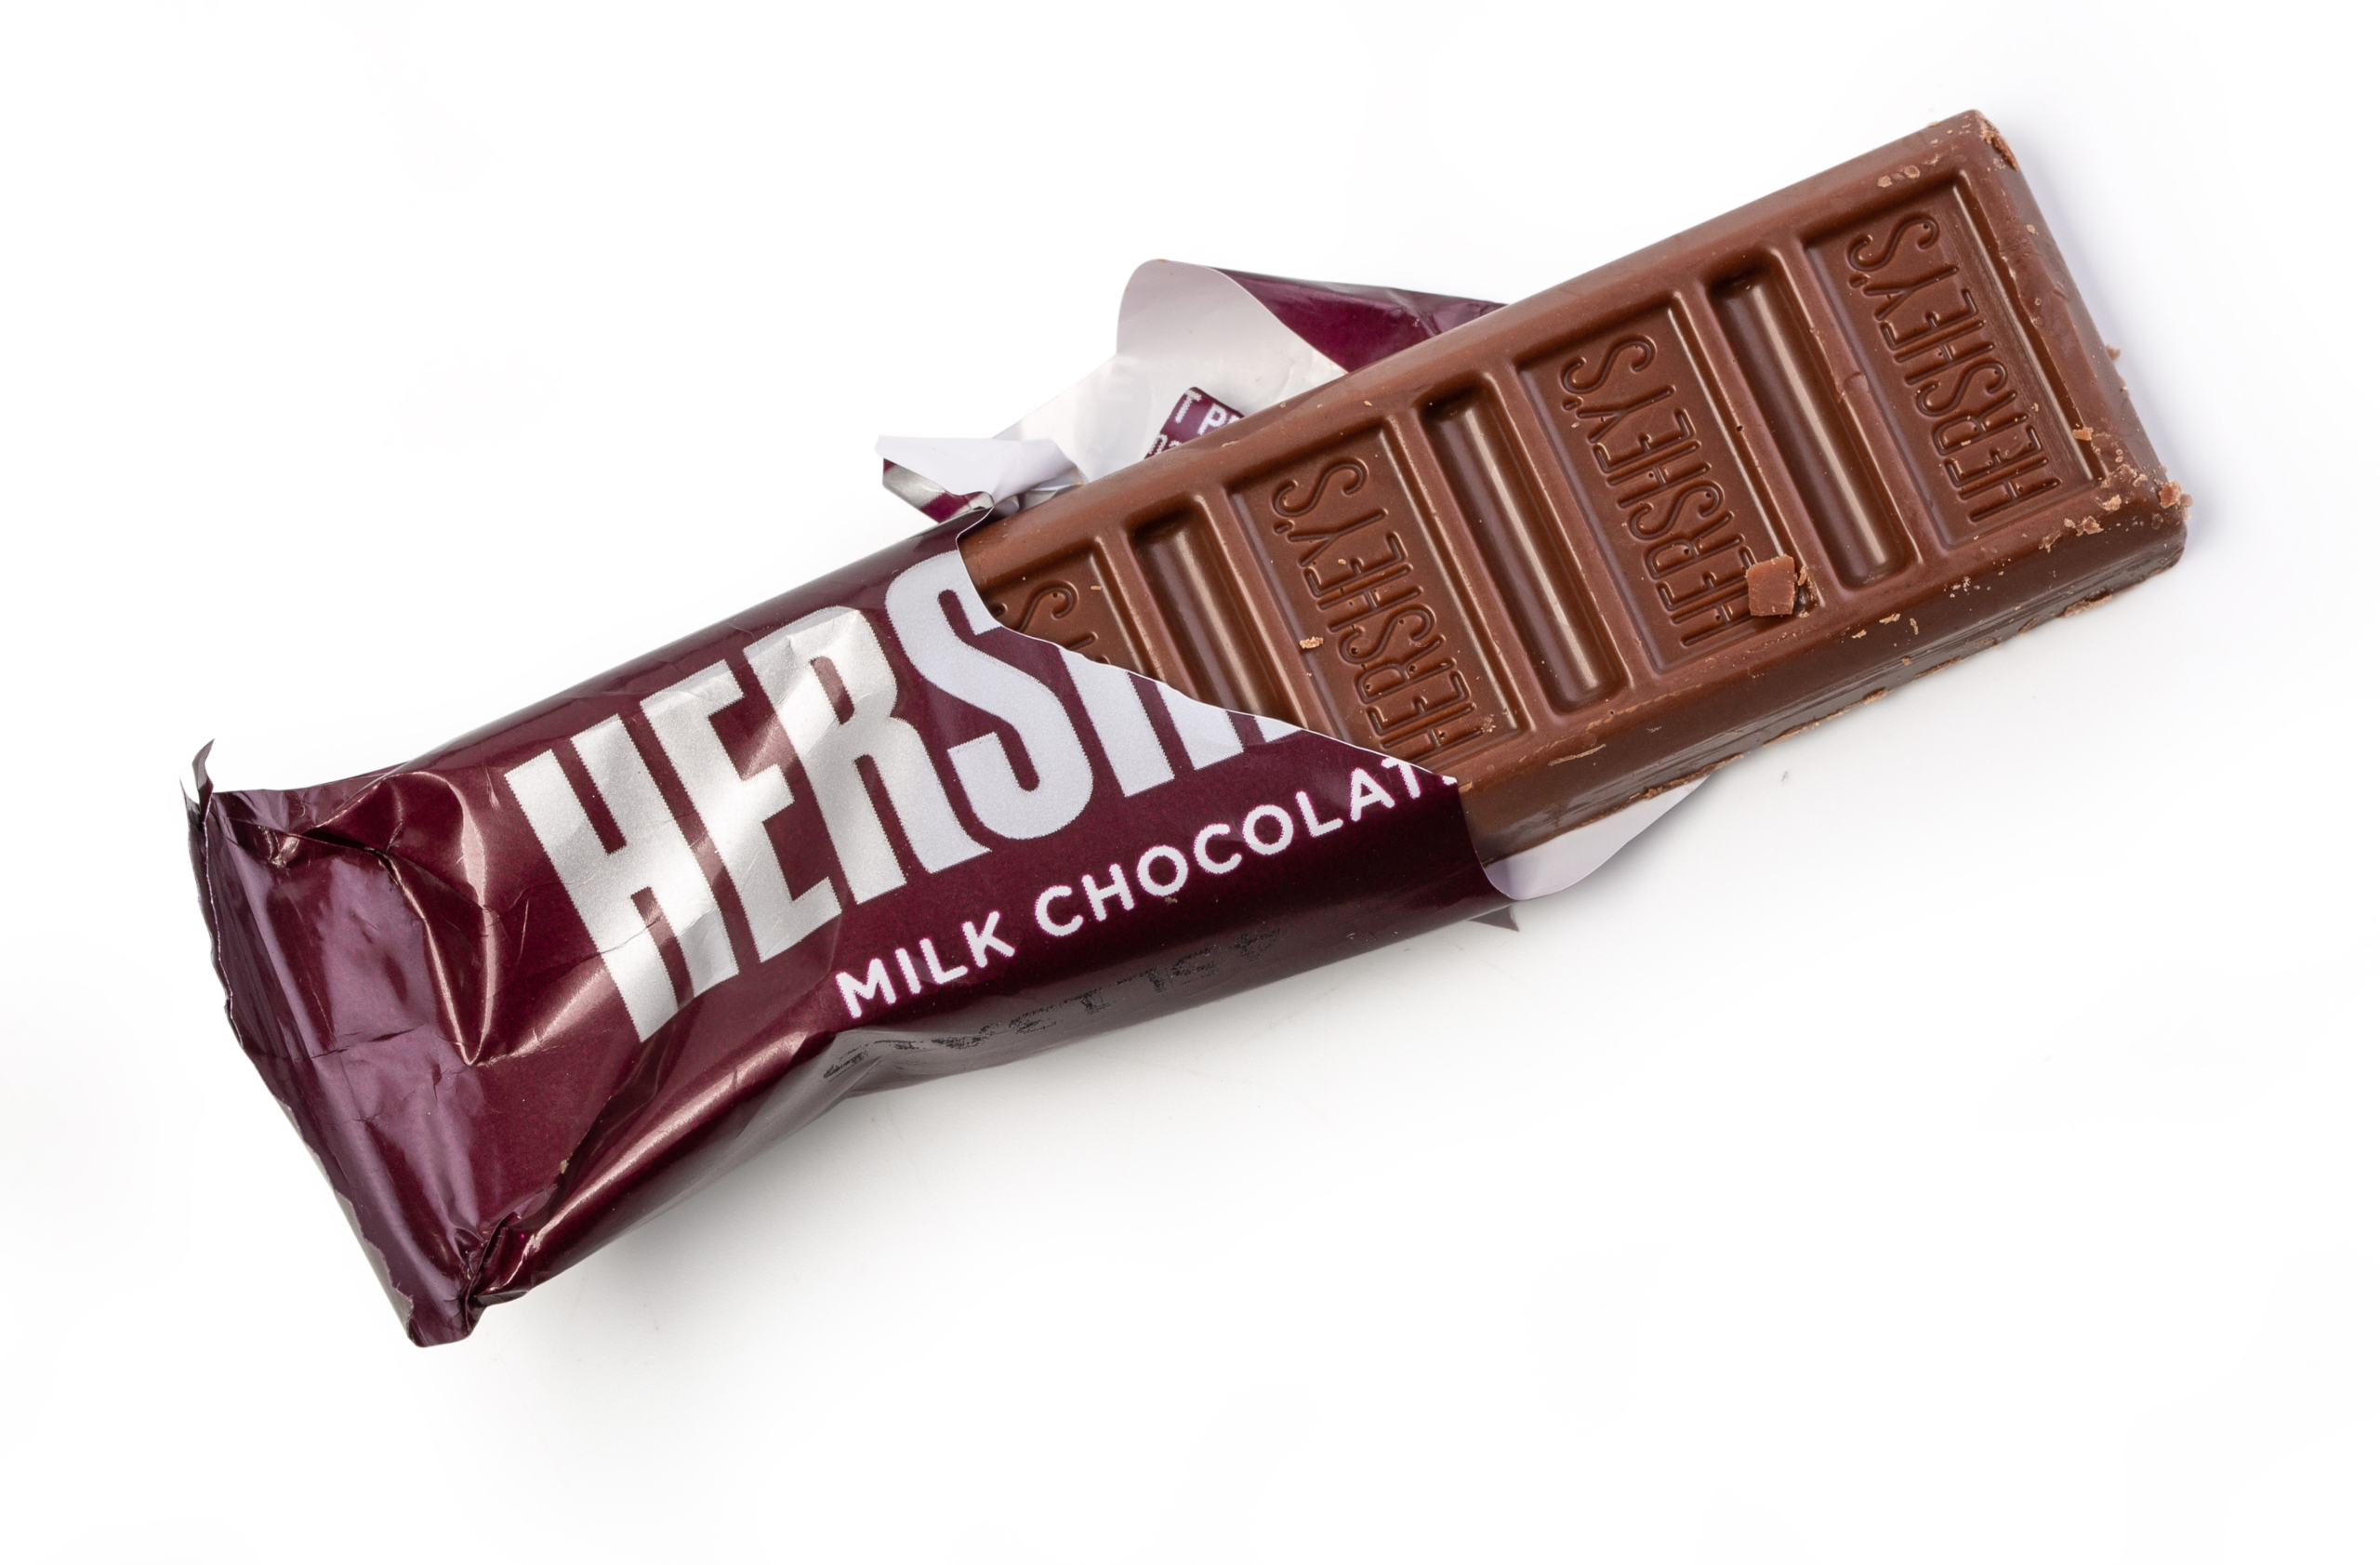 Những thanh socola của Hershey từng là mặt hàng thực phẩm tiêu chuẩn của quân đội Hoa Kỳ. (Ảnh: Shutterstock)